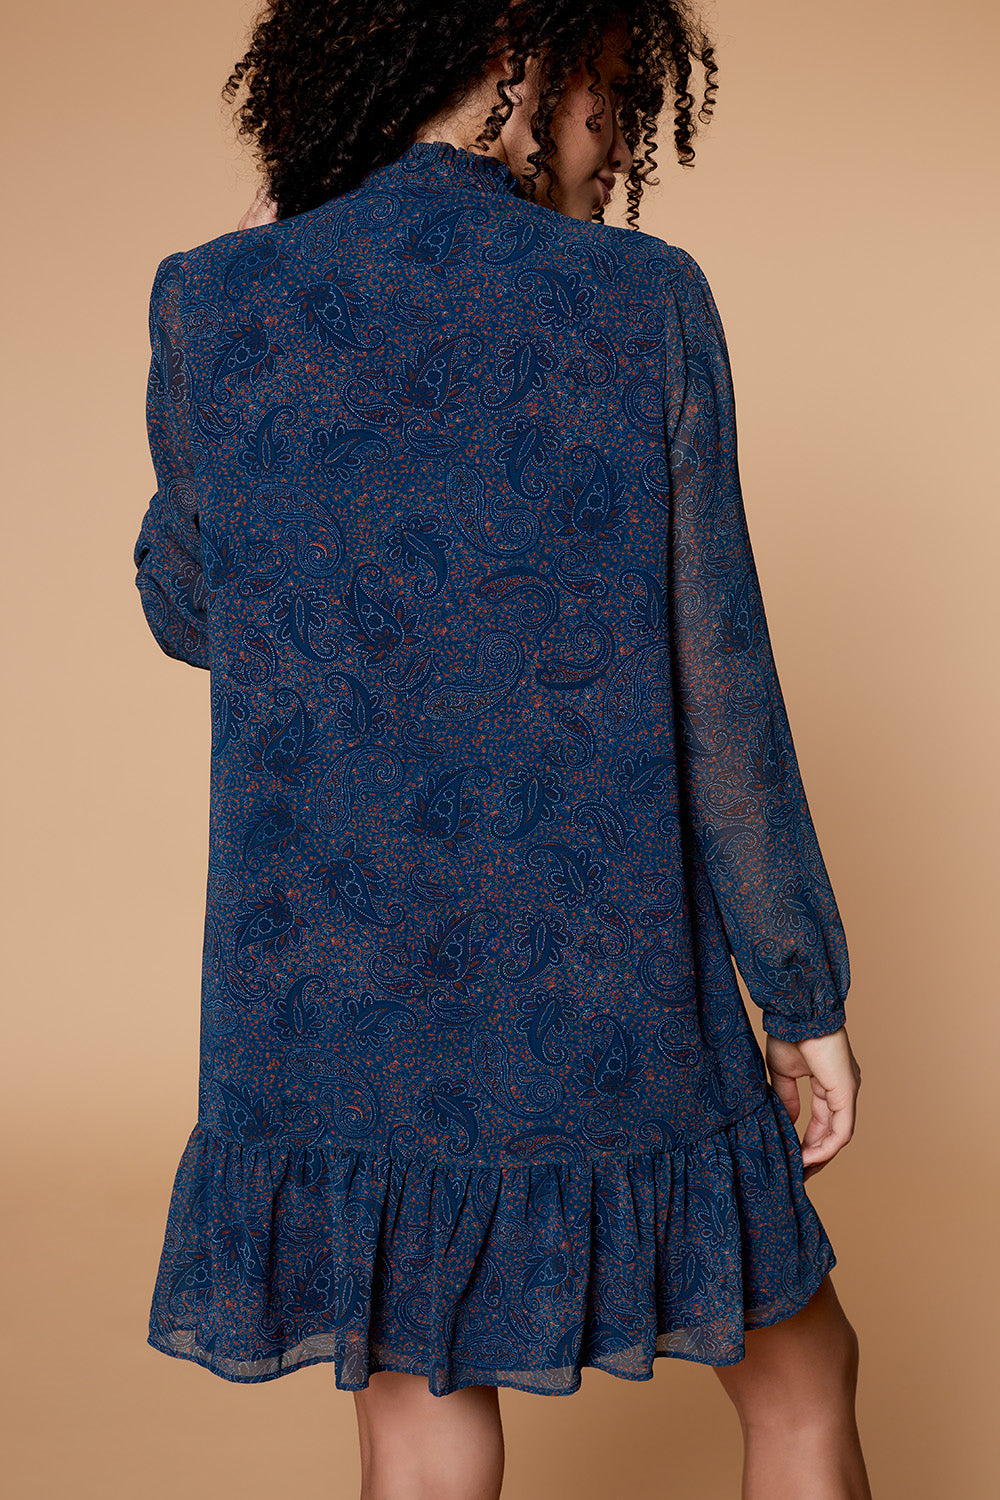 RUSTY - Robe bleu canard à imprimé cachemire